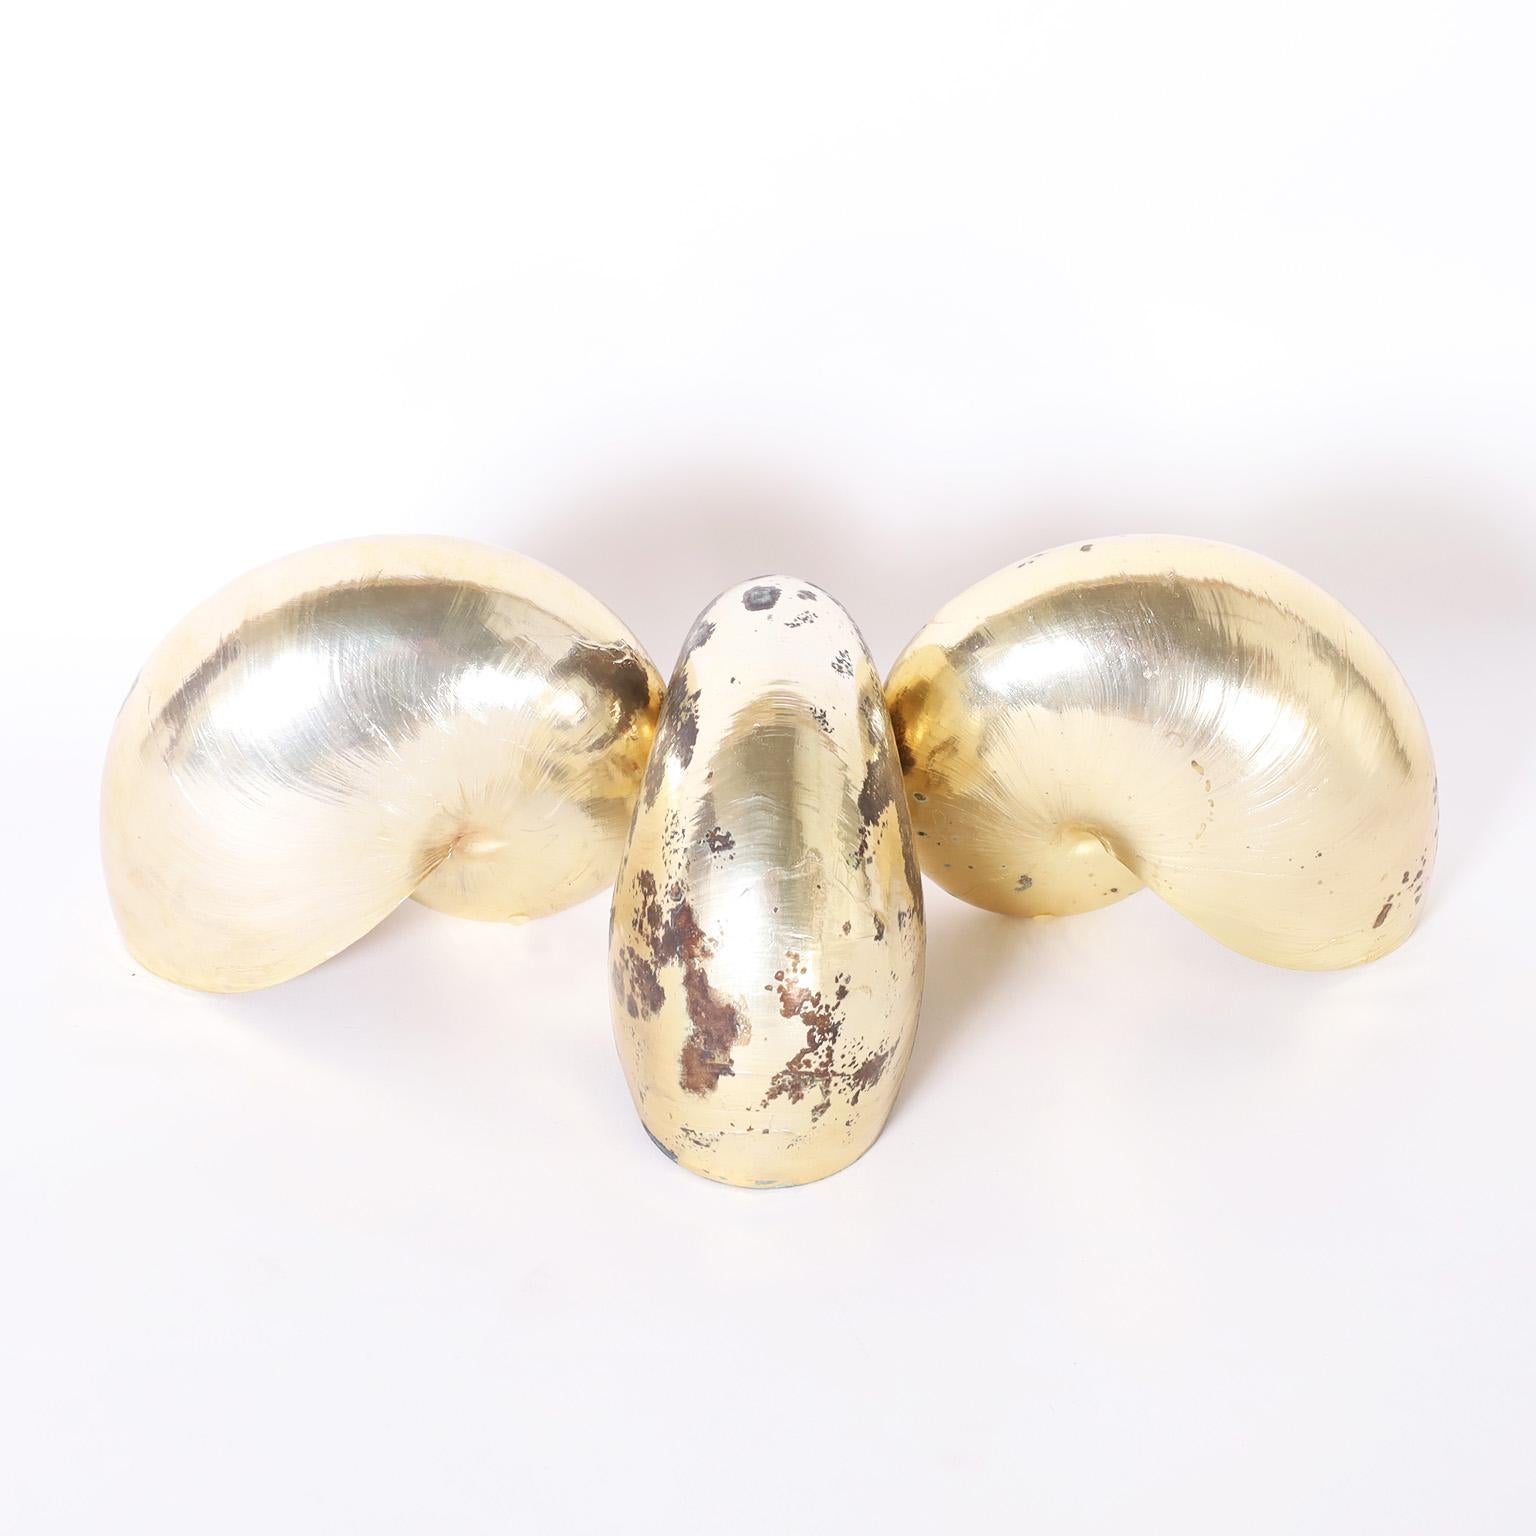 Groupe de trois coquilles de nautiles à la forme emblématique, plaquées or avec une sous-couche de cuivre qui se porte comme un élément sculptural.